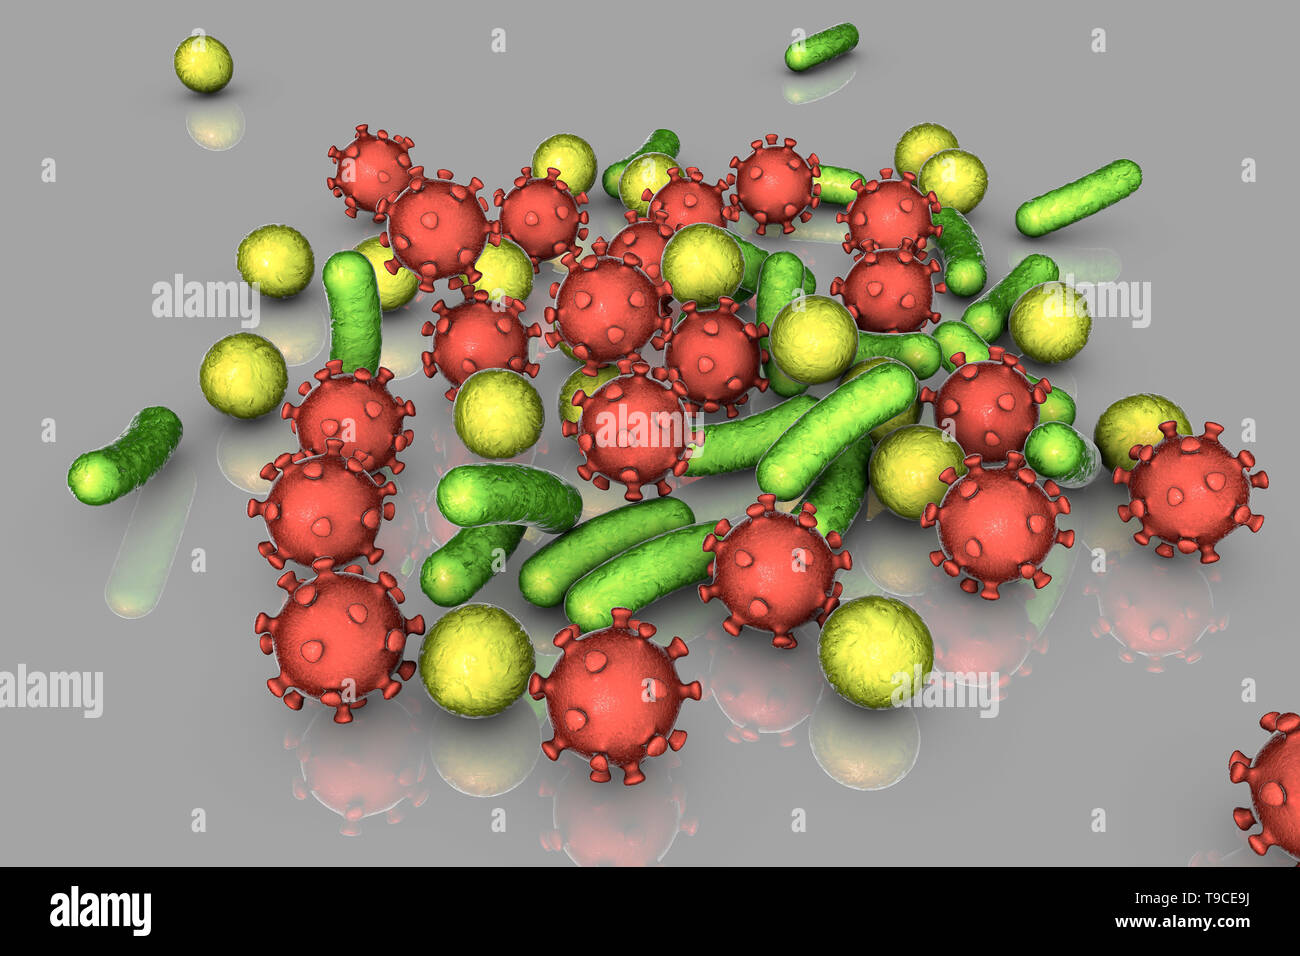 Les bactéries et les virus, illustration Banque D'Images